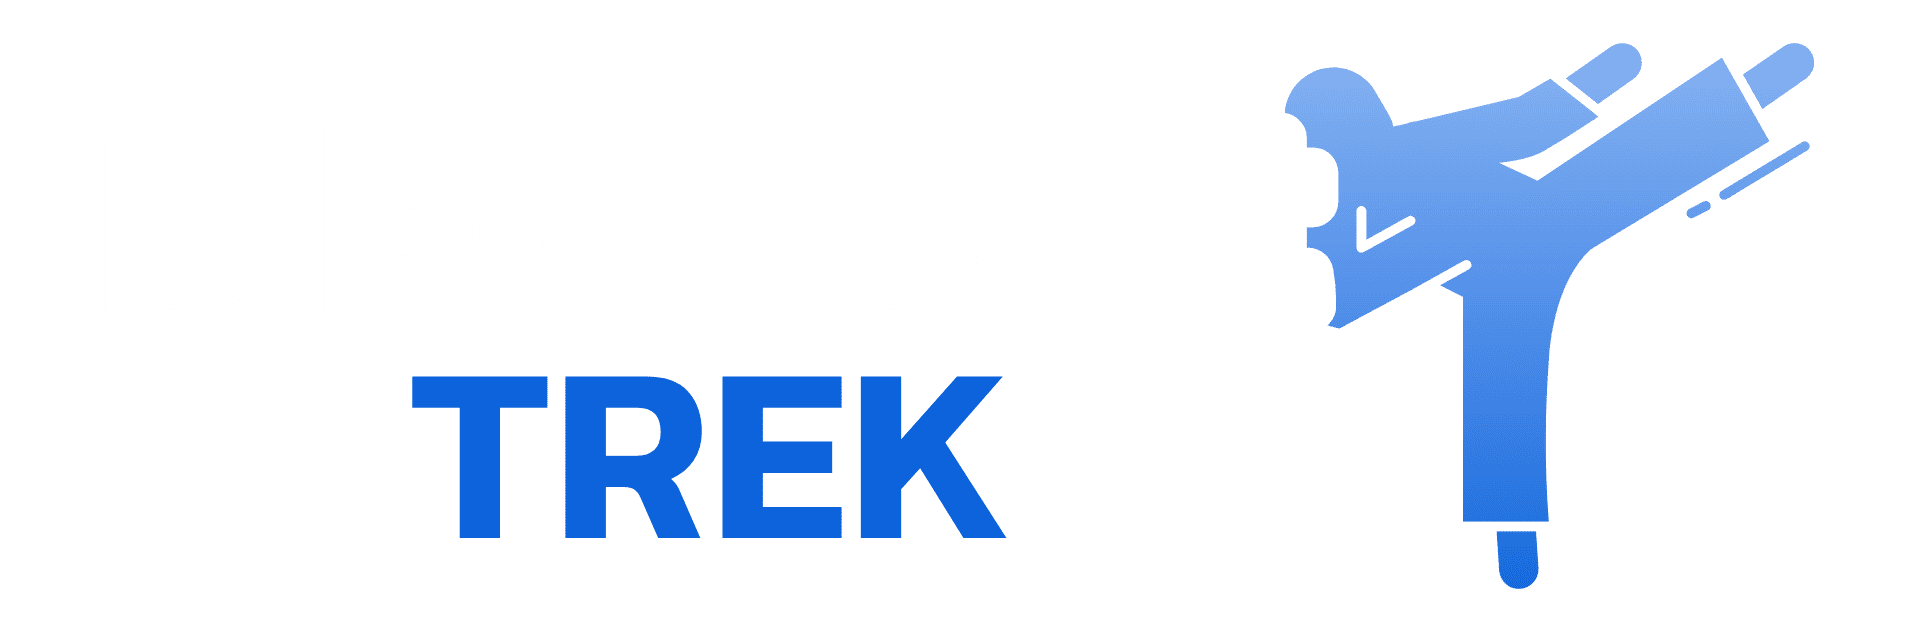 Black Belt Trek